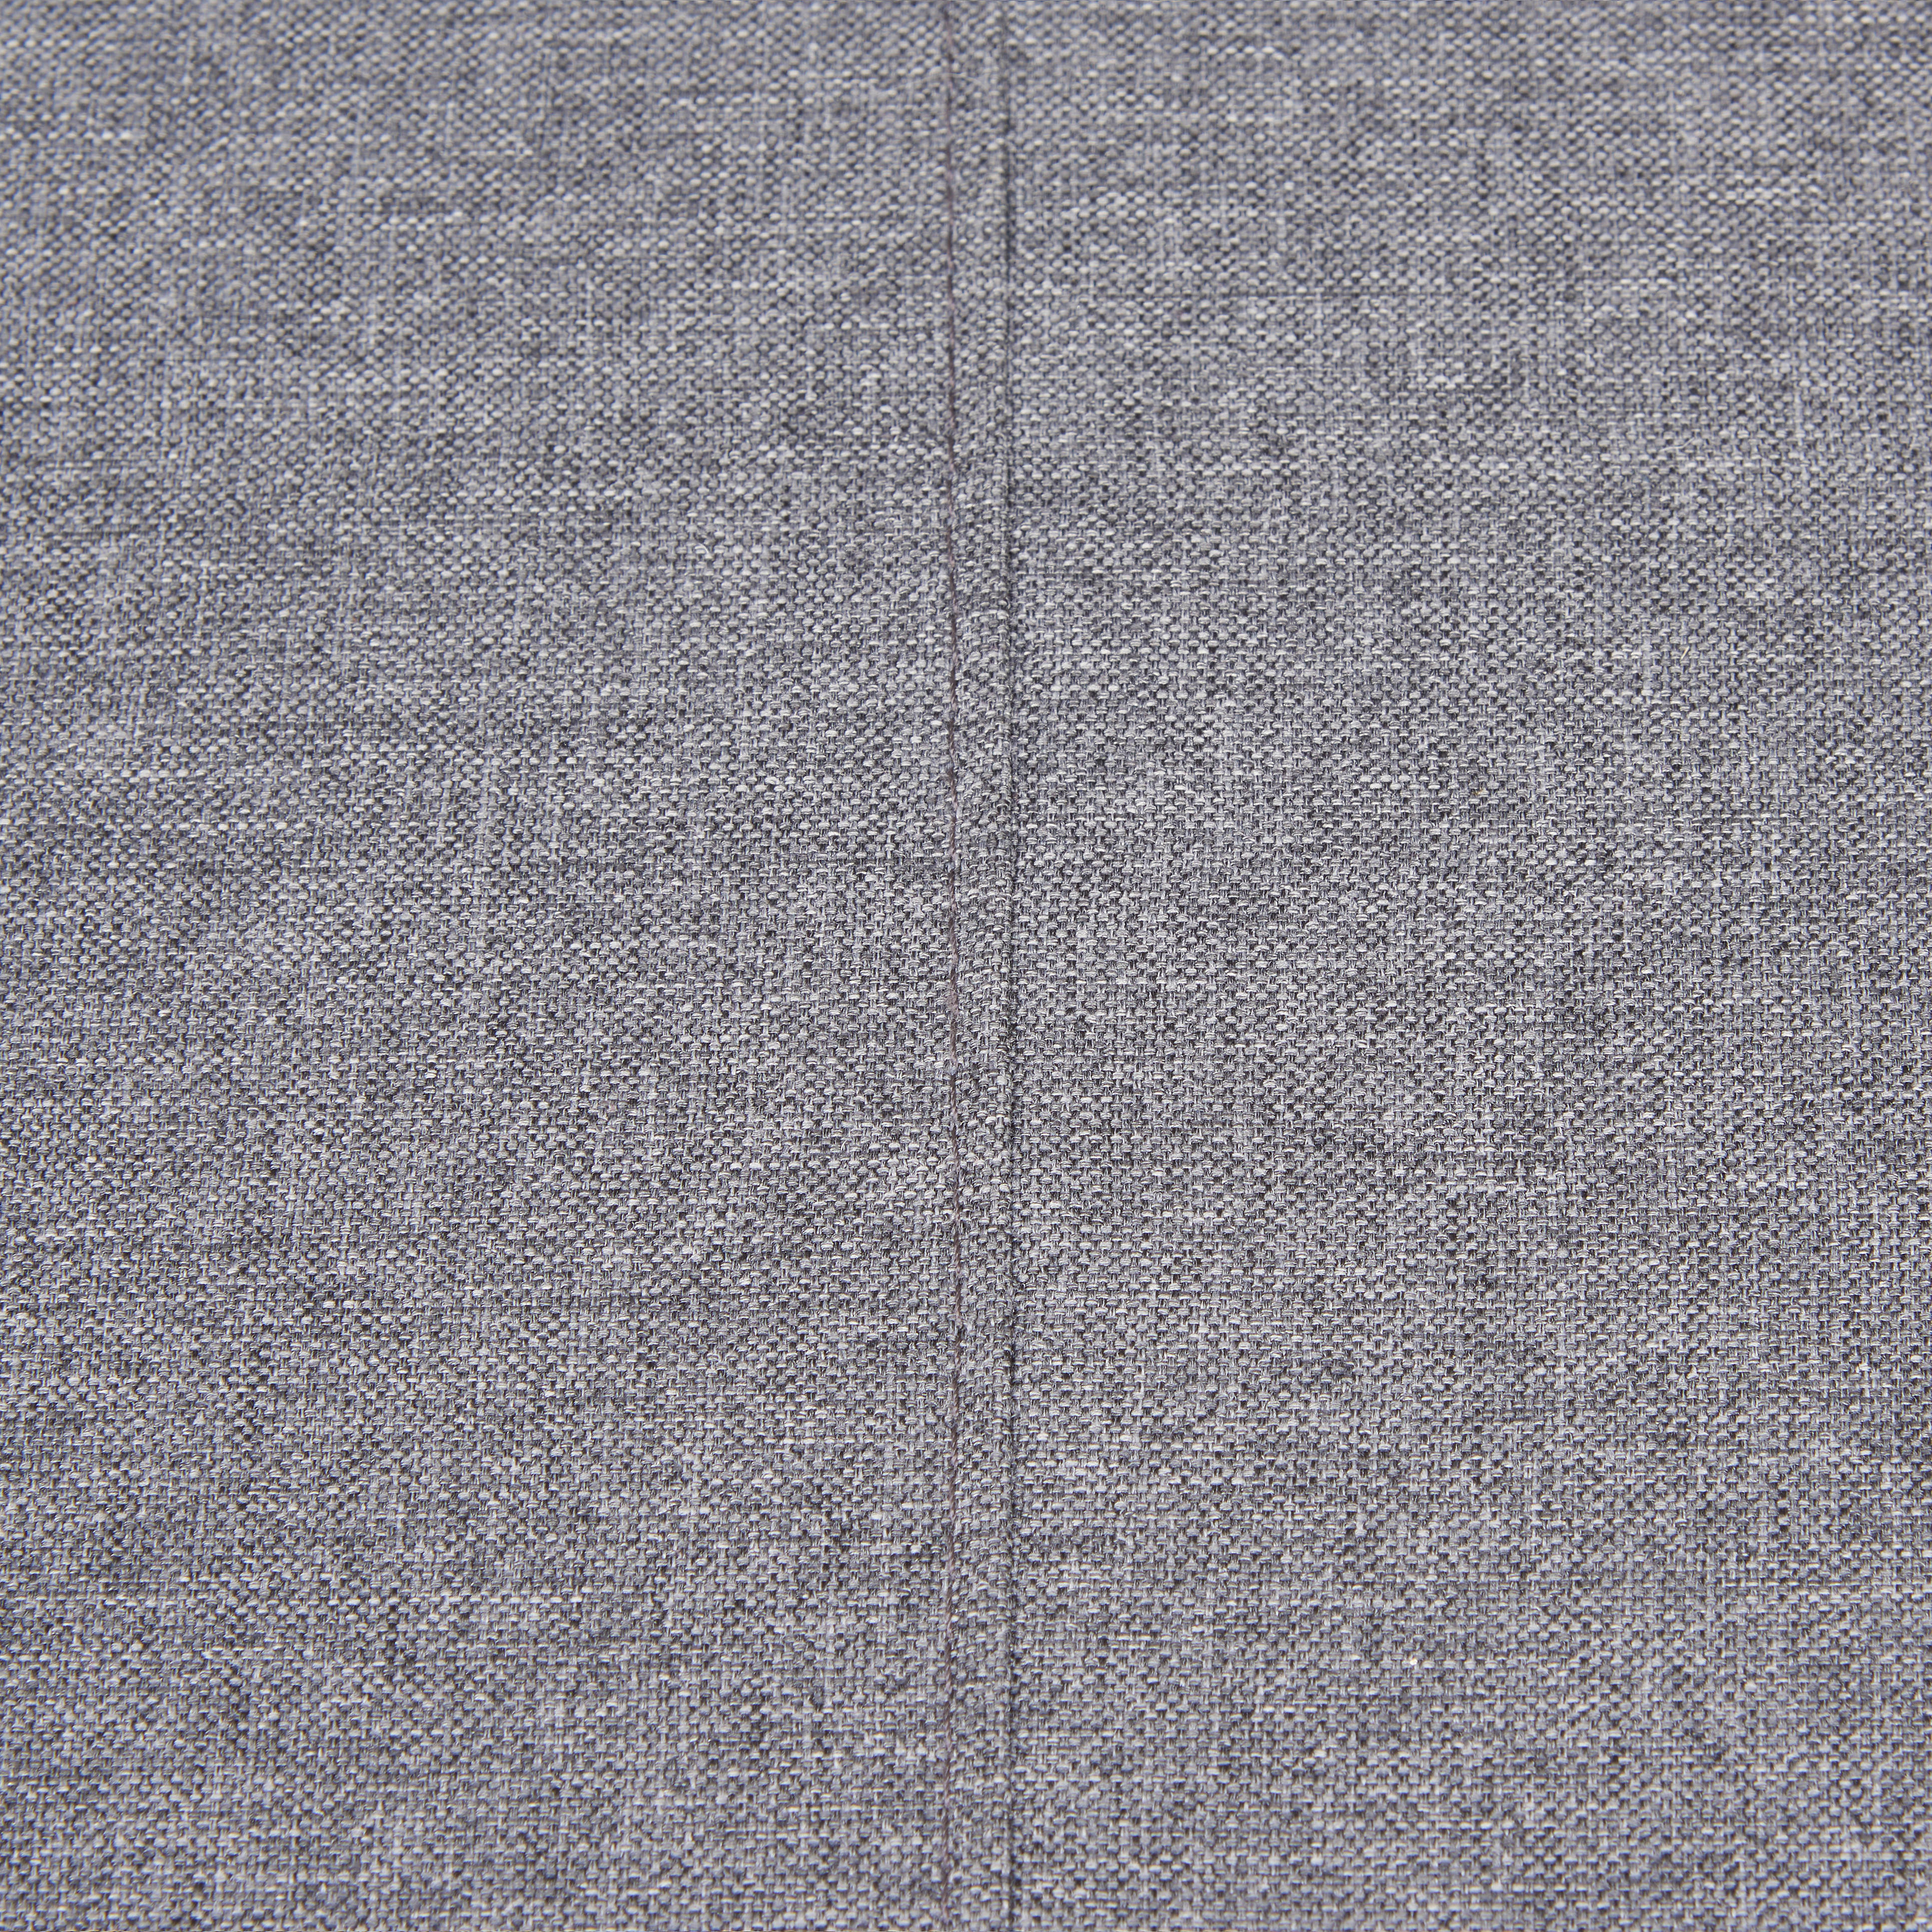 BOXSPRINGSOFA in Textil Grau  - Silberfarben/Grau, Design, Textil/Metall (202/96/105cm) - Carryhome